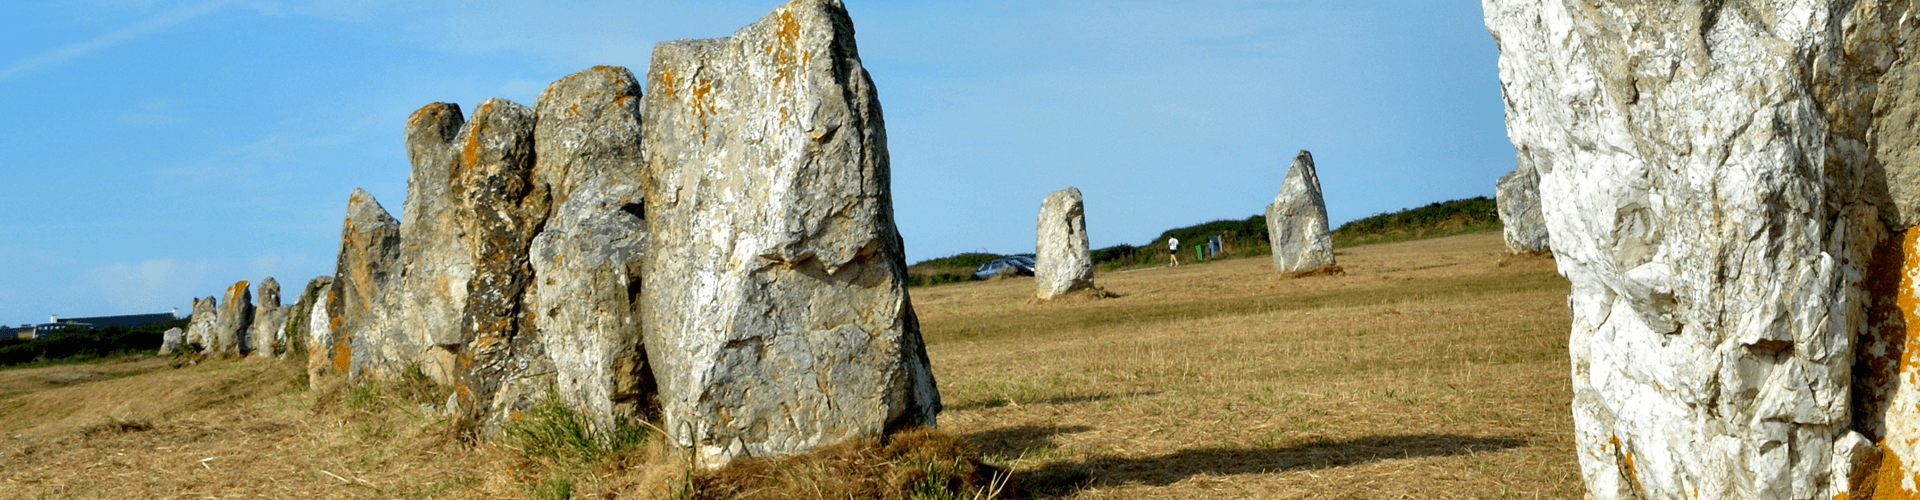 Bezienswaardigheden in Bretagne: Menhirs Camaret sur mer